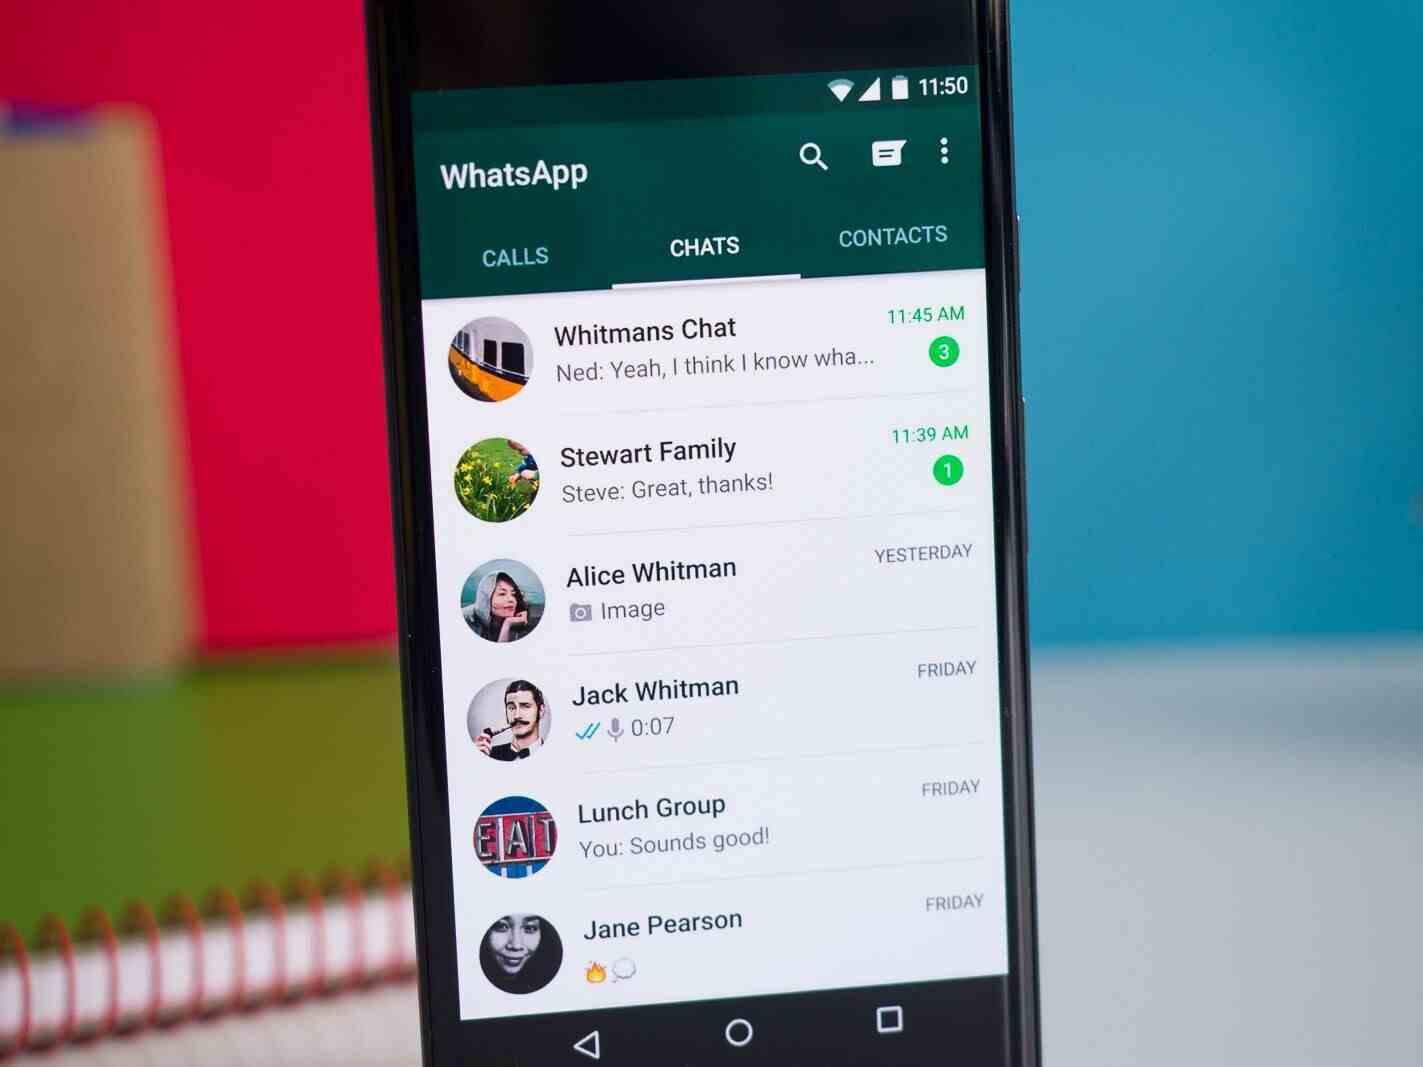 Ne olursa olsun, WhatsApp hala dünya çapında en çok kullanılan IM uygulamalarından biridir.  - WhatsApp kullanıcıları artık Hizmet Şartları'nı reddedebilir, ancak bu, uygulama işlevleri pahasına olabilir